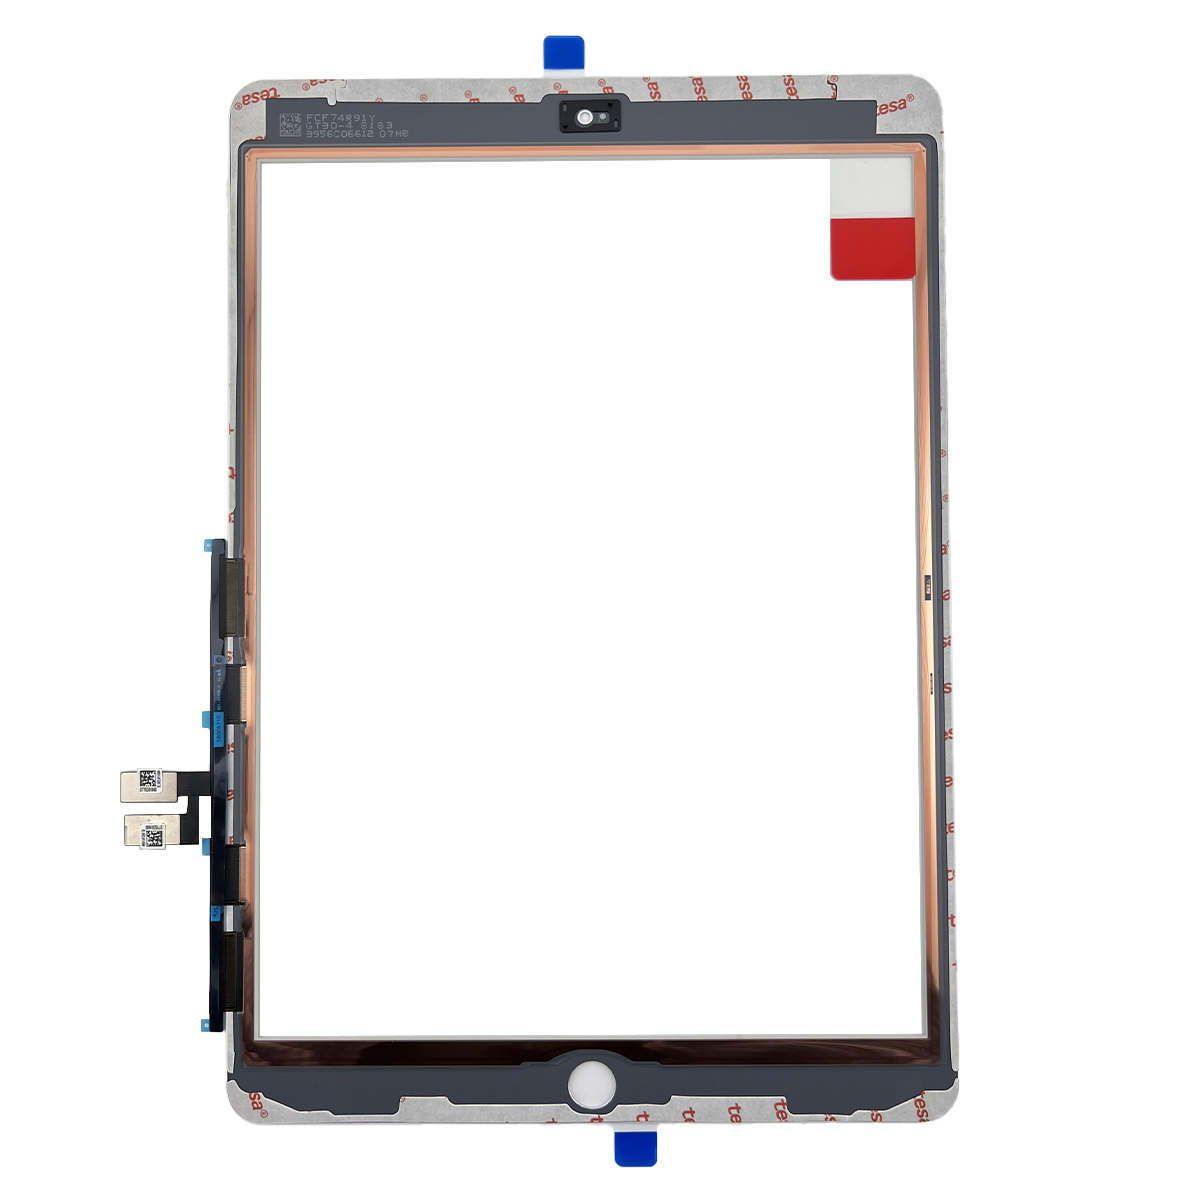 即日発送! iPad7 第7世代 A2197 A2200 A2198 フロントパネル 白 タッチスクリーン交換 デジタイザ修理 リペアパーツ 画面 ガラス 割れ_画像2